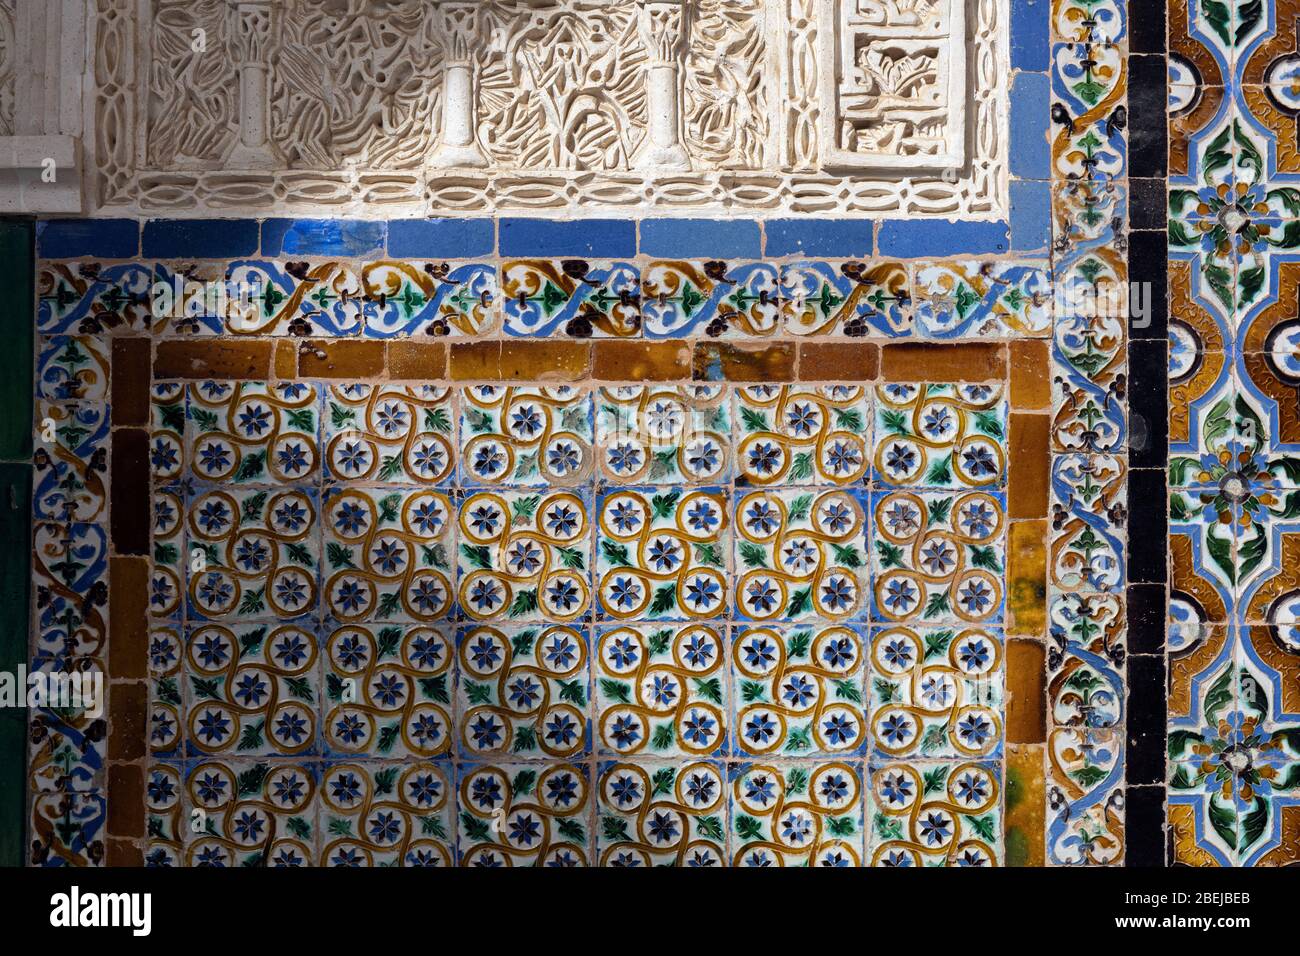 Lavori decorativi in gesso e piastrelle di ceramica nella Casa de Pilatos, o Casa di Pilate, Siviglia, provincia di Siviglia, Andalusia, Spagna meridionale. Foto Stock